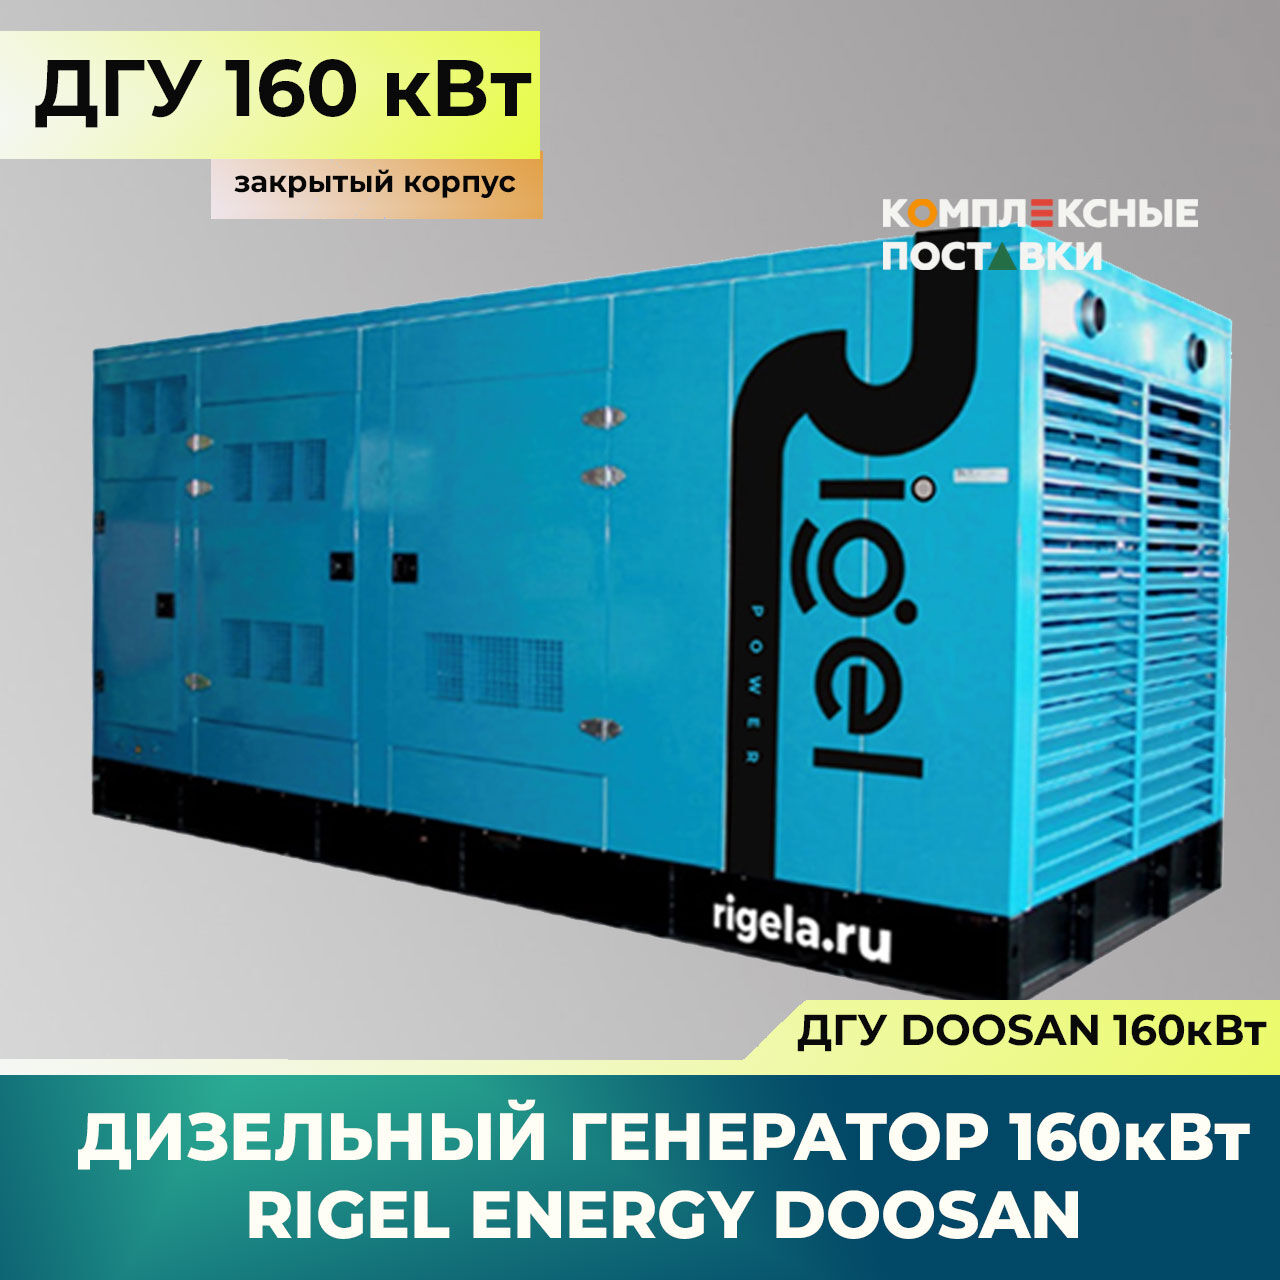 ДГУ 160кВт Doosan Дизель-генератор Rigel Energy Doosan RED 160 (160 кВт, Doosan) закрытый